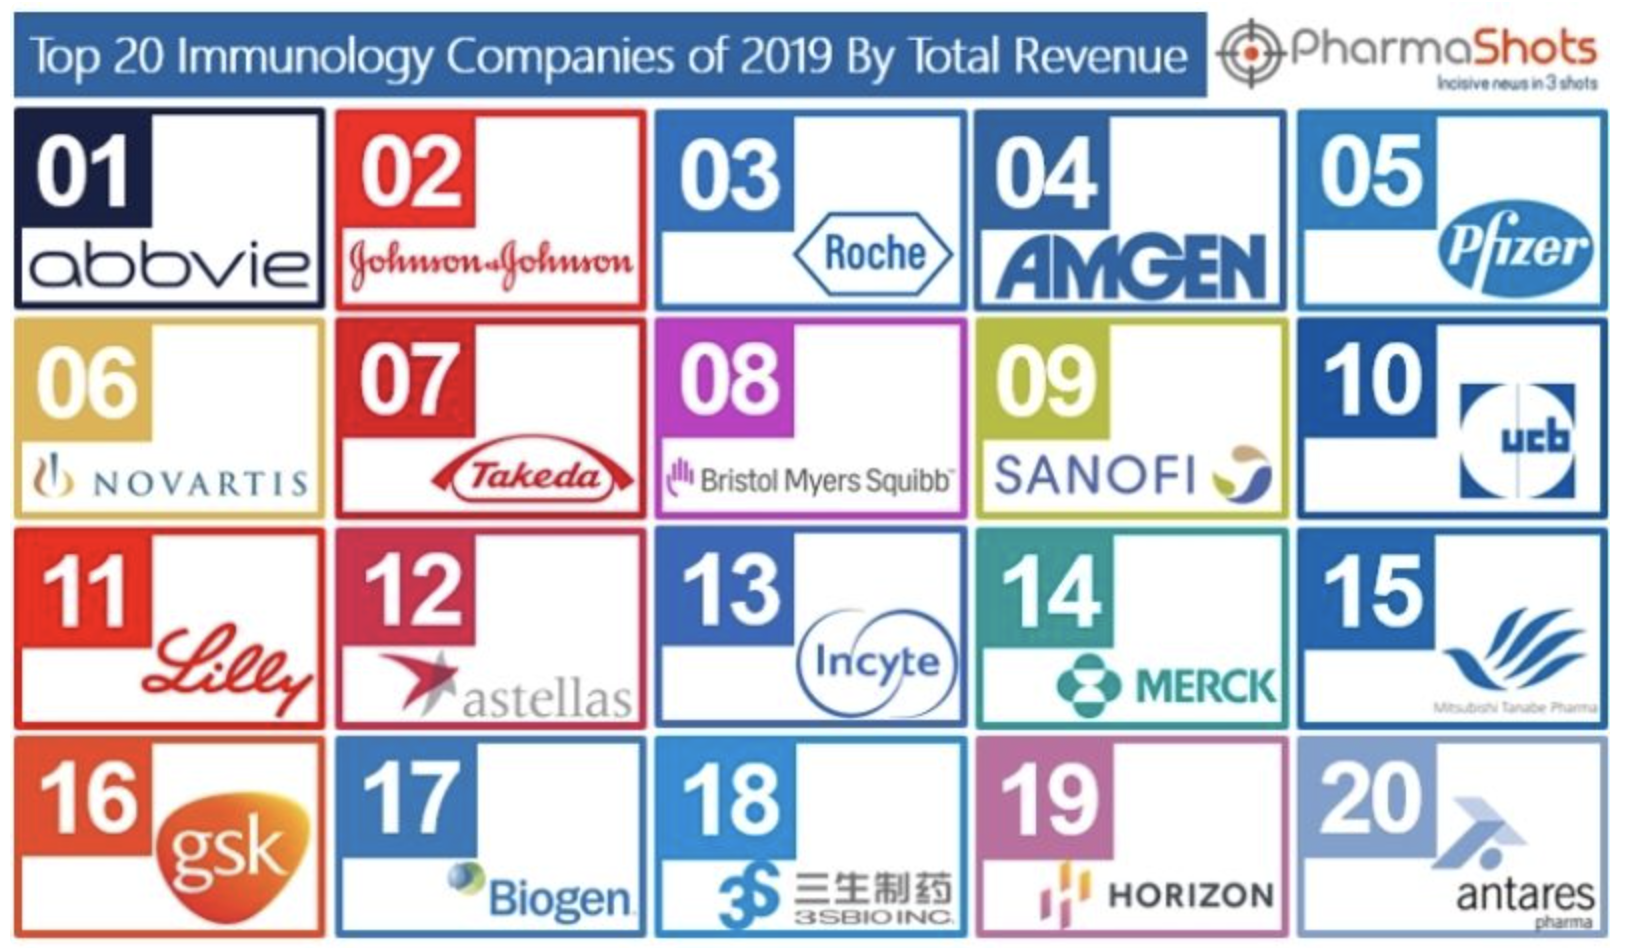 2019年全球免疫学领域<font color="red">销售额</font>TOP20的制药公司